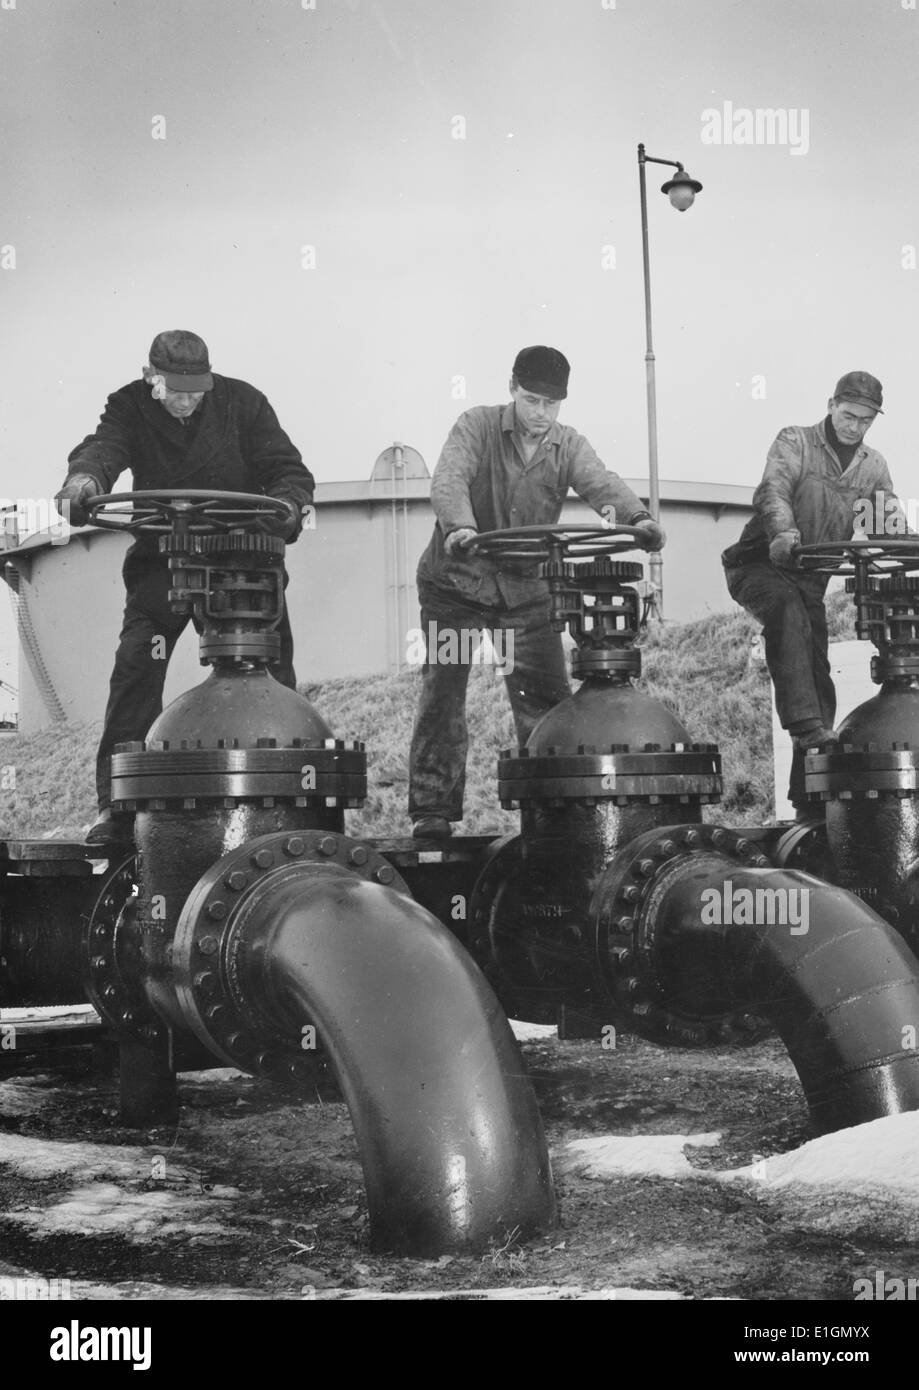 Photo d'hommes au niveau des roues de grandes vannes régulent le flux d'huile dans des pétroliers à un port de la côte atlantique des États-Unis. Datée 1944 Banque D'Images